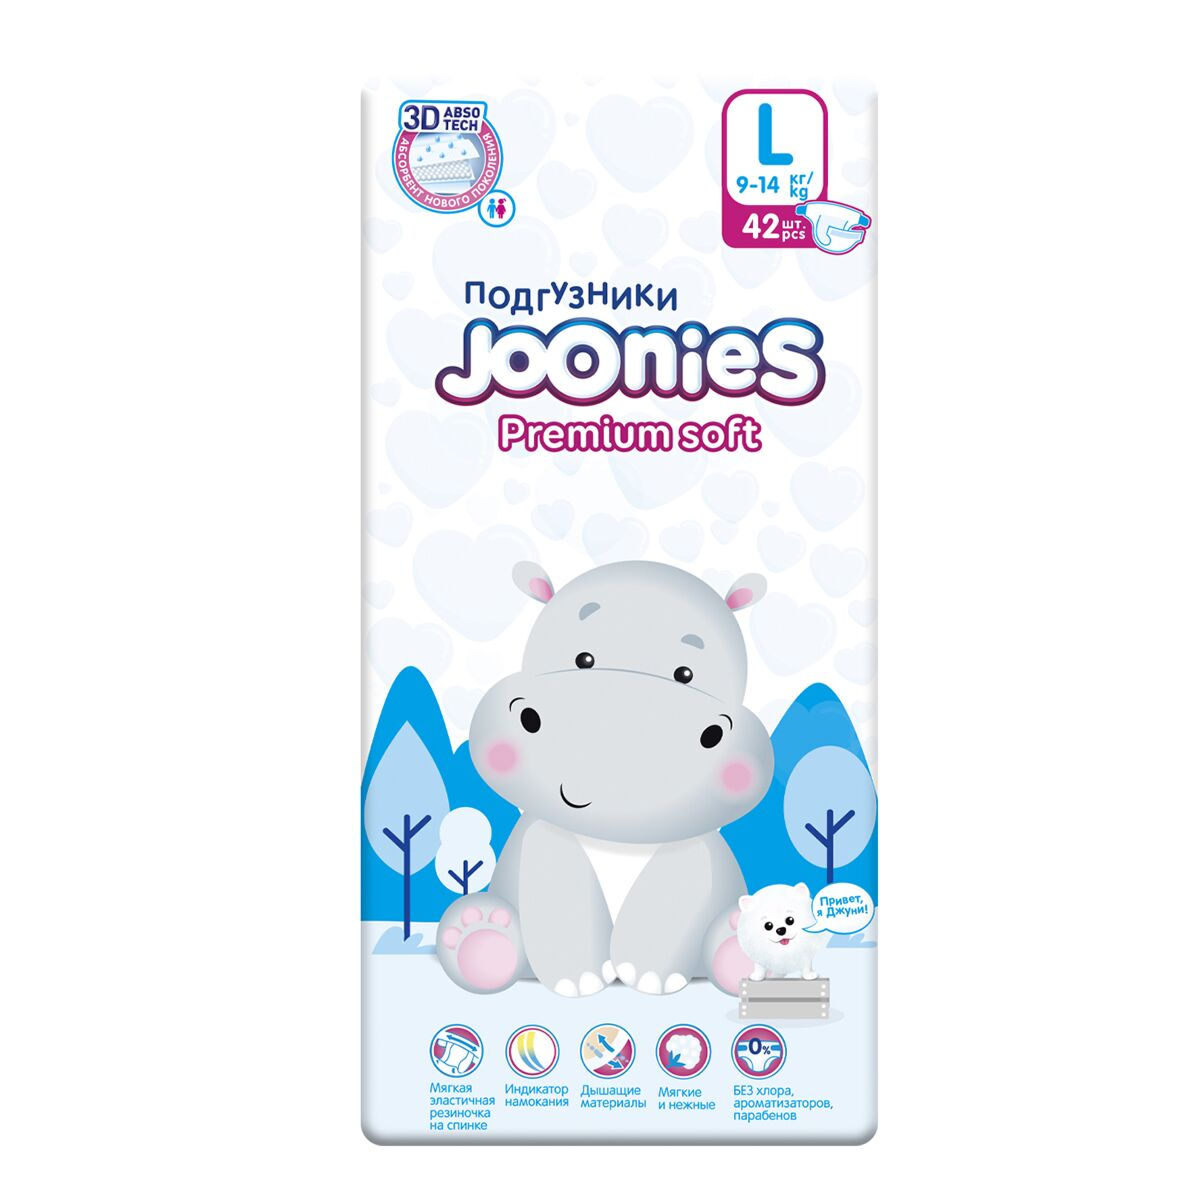 Подгузники Joonies Premium Soft, размер L (9-14 кг), 42 шт 953213KZ